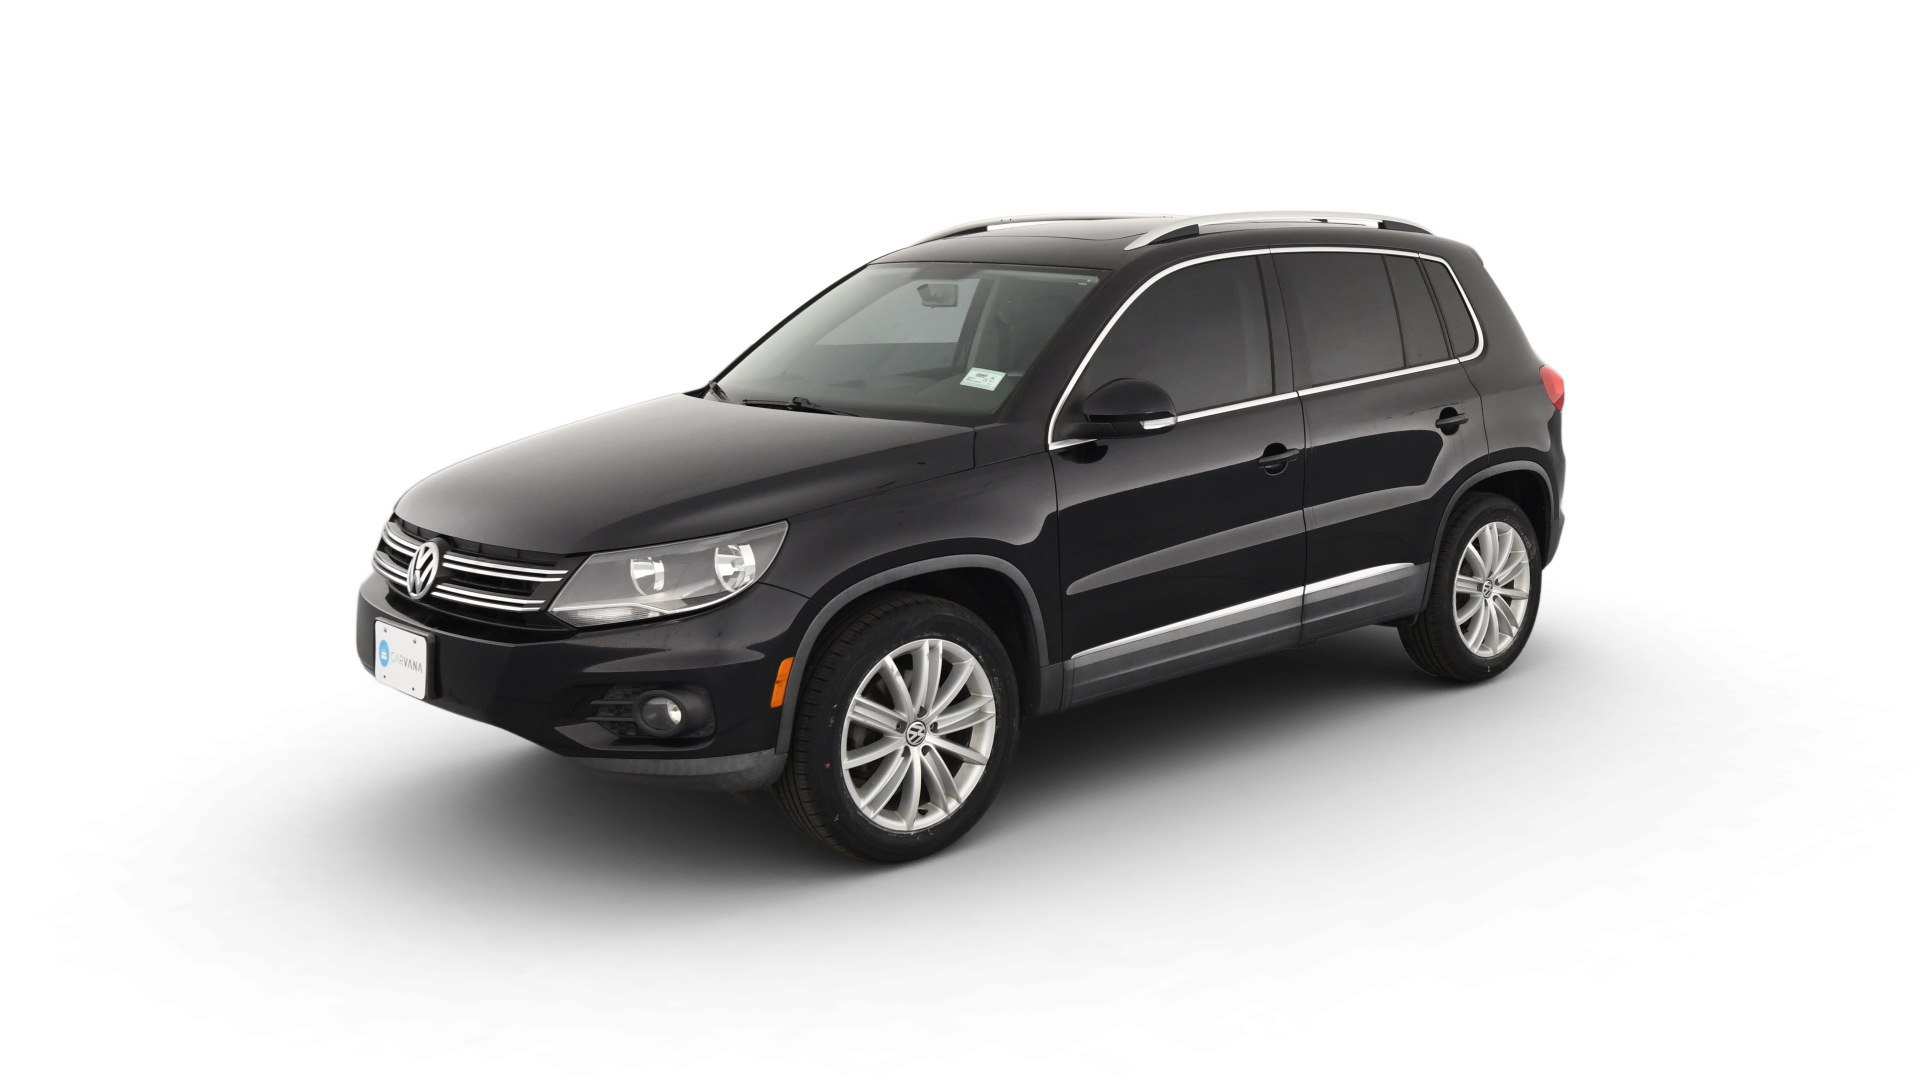 Volkswagen Tiguan model image.